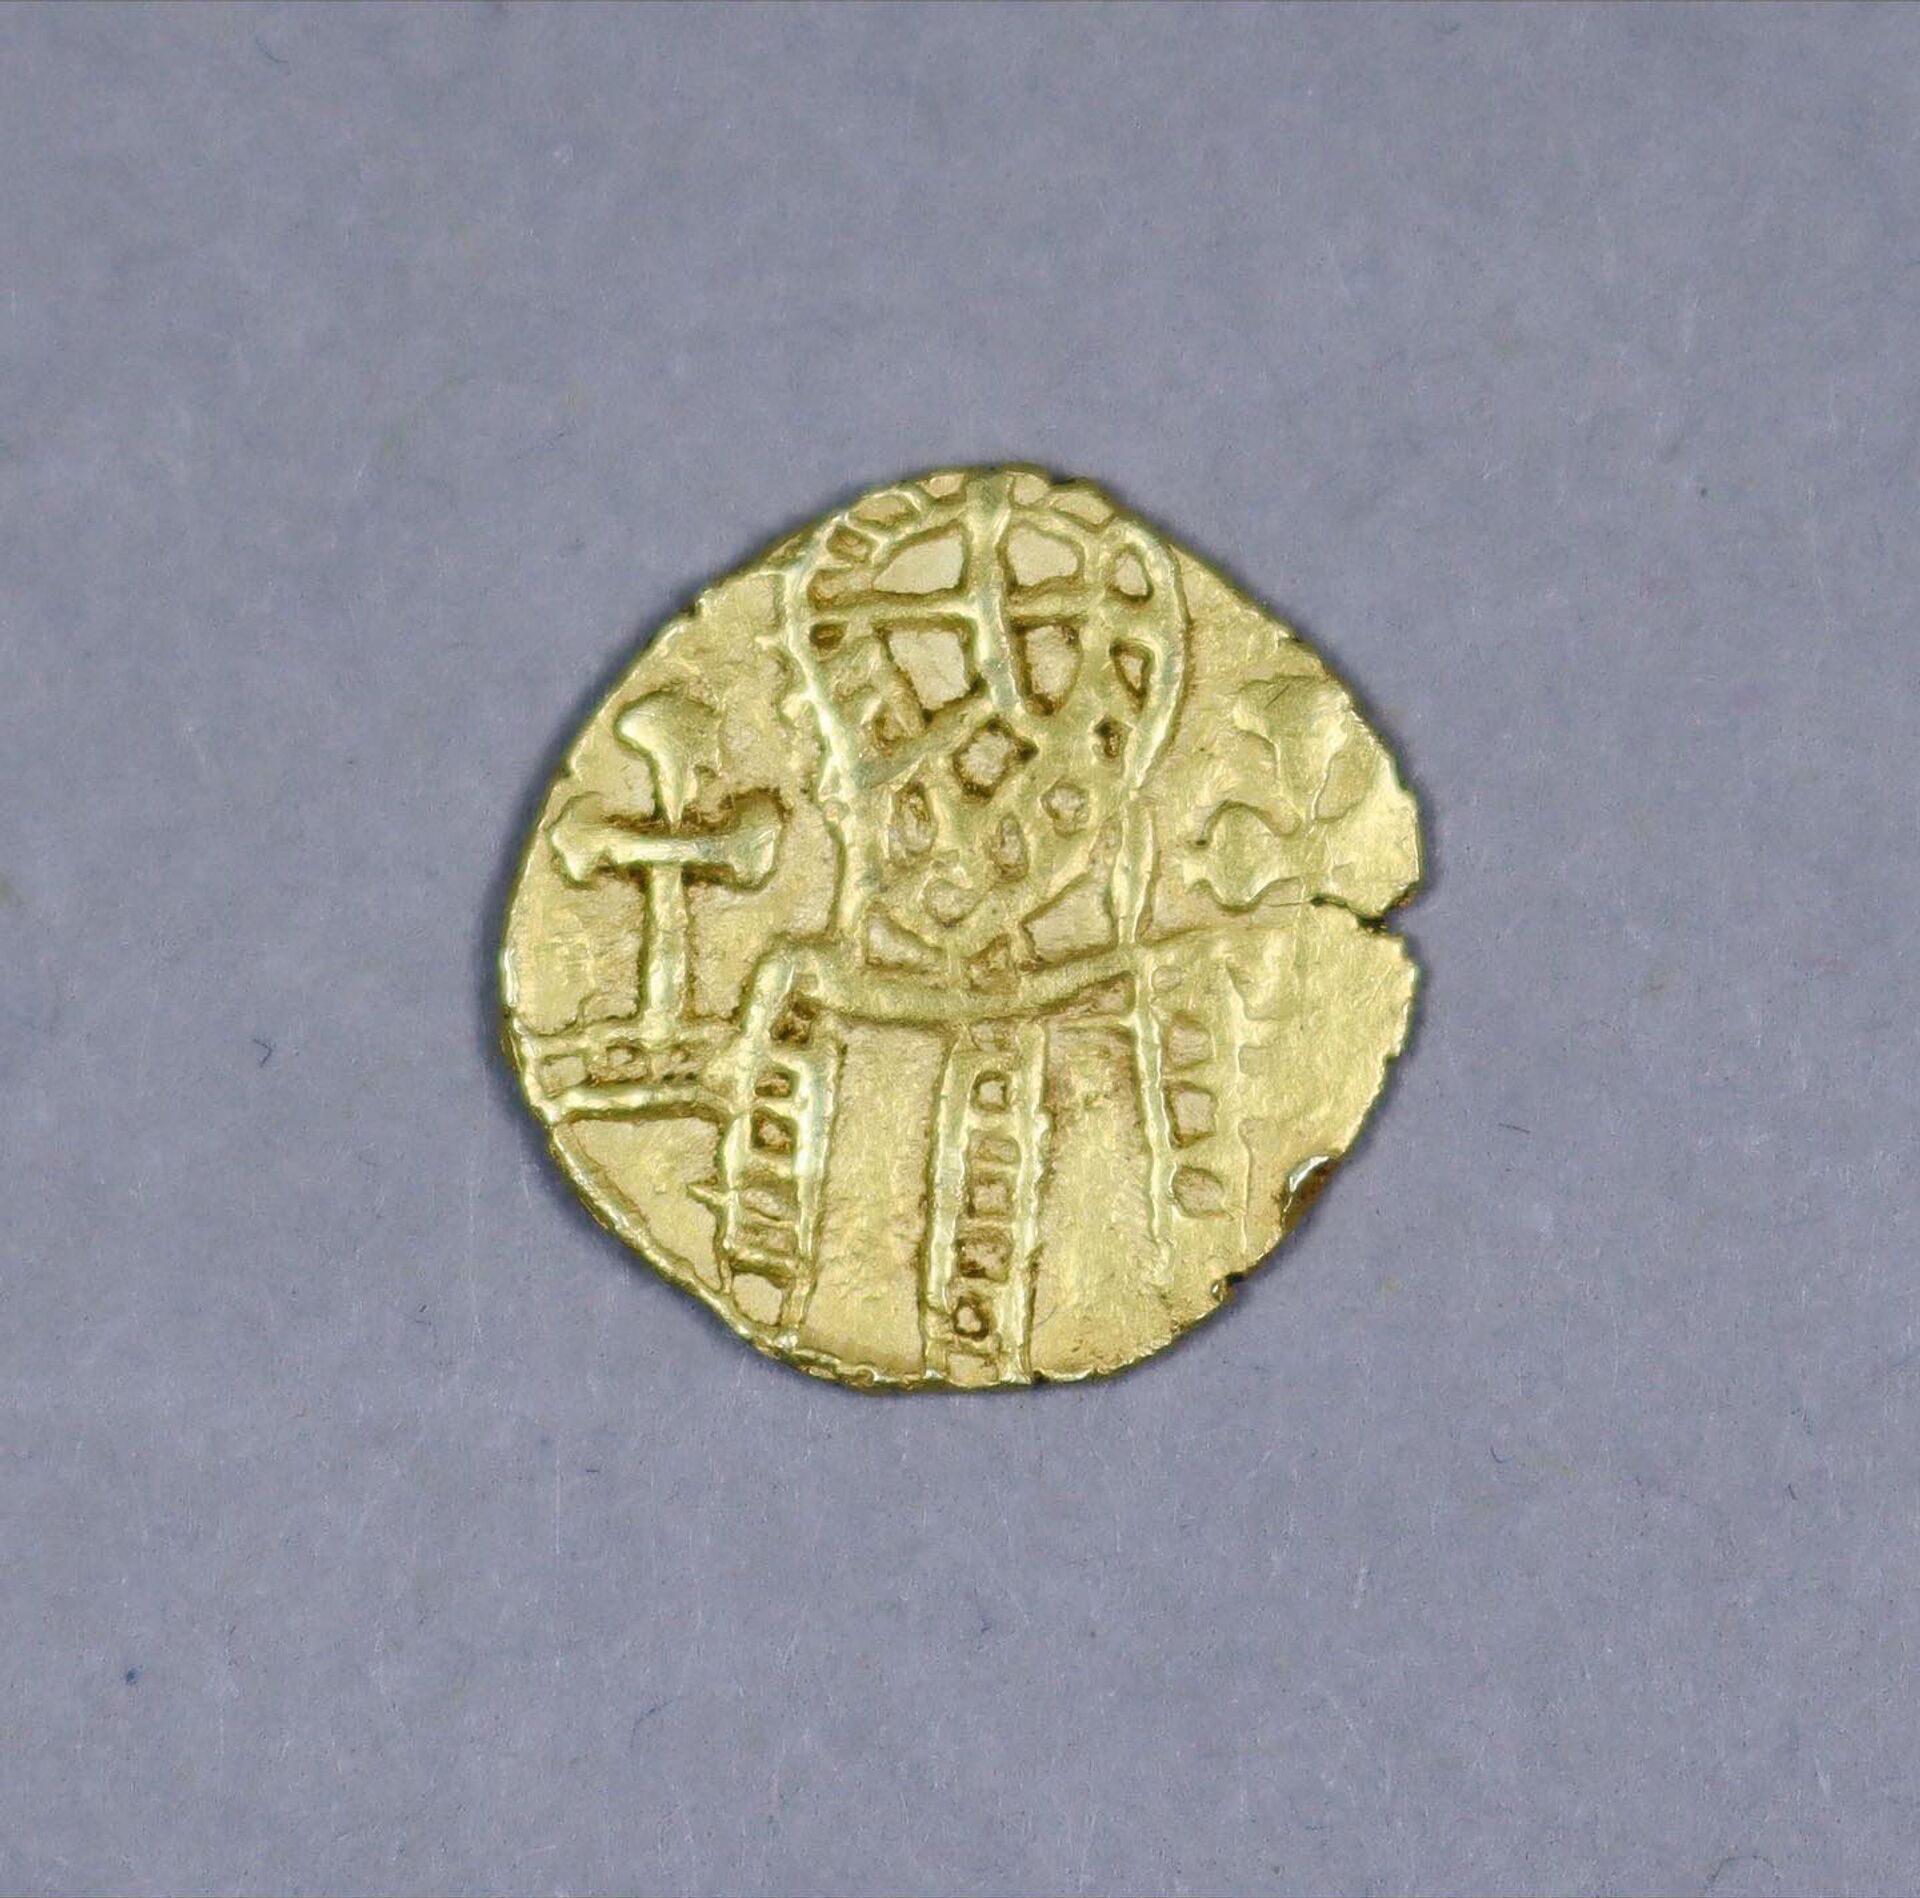 Xelim de ouro thrymsa é uma moeda extremamente rara, e a mais valiosa da coleção de John Cross - Sputnik Brasil, 1920, 09.11.2021